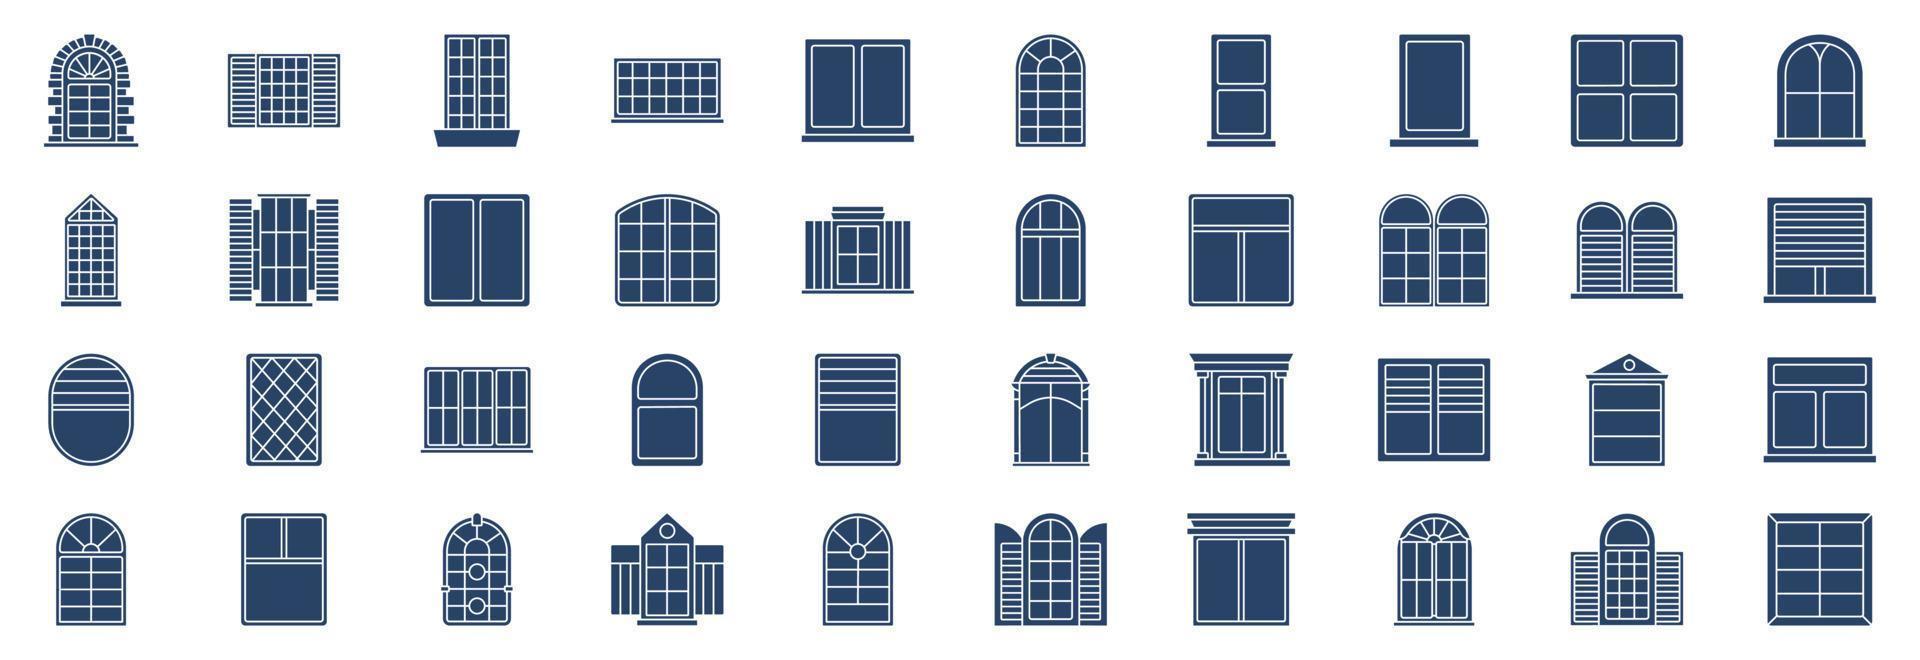 samling av ikoner relaterad till fönster, Inklusive ikoner tycka om arkitektur, design, dekorativ och Mer. vektor illustrationer, pixel perfekt uppsättning